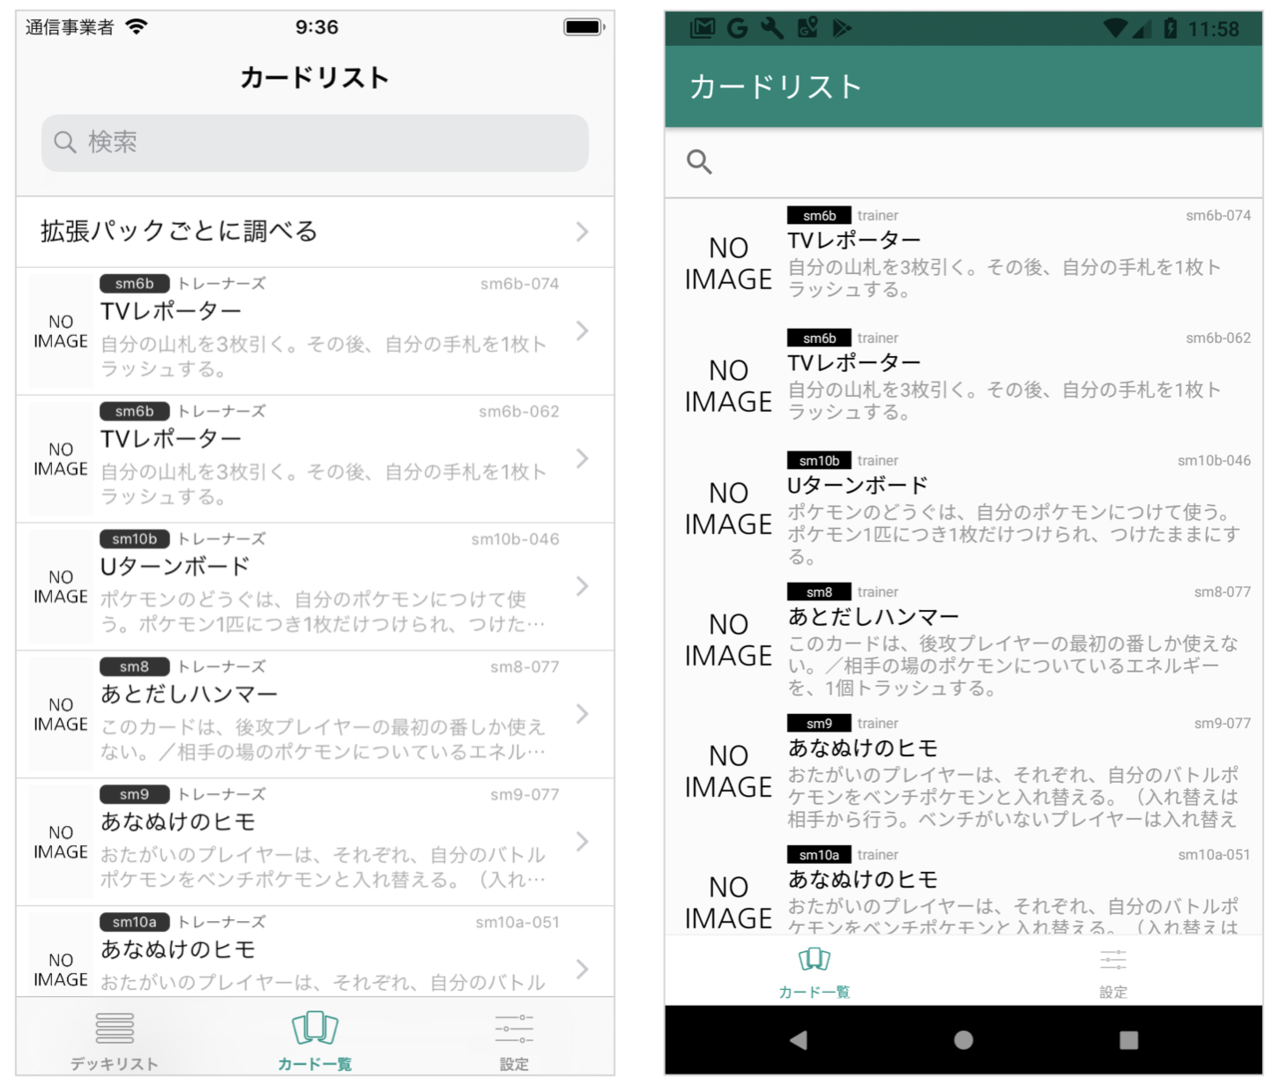 ポケカデッキ構築アプリ Ptcgnote V1 0 9をリリースしました Kenji Wada さくさん Note